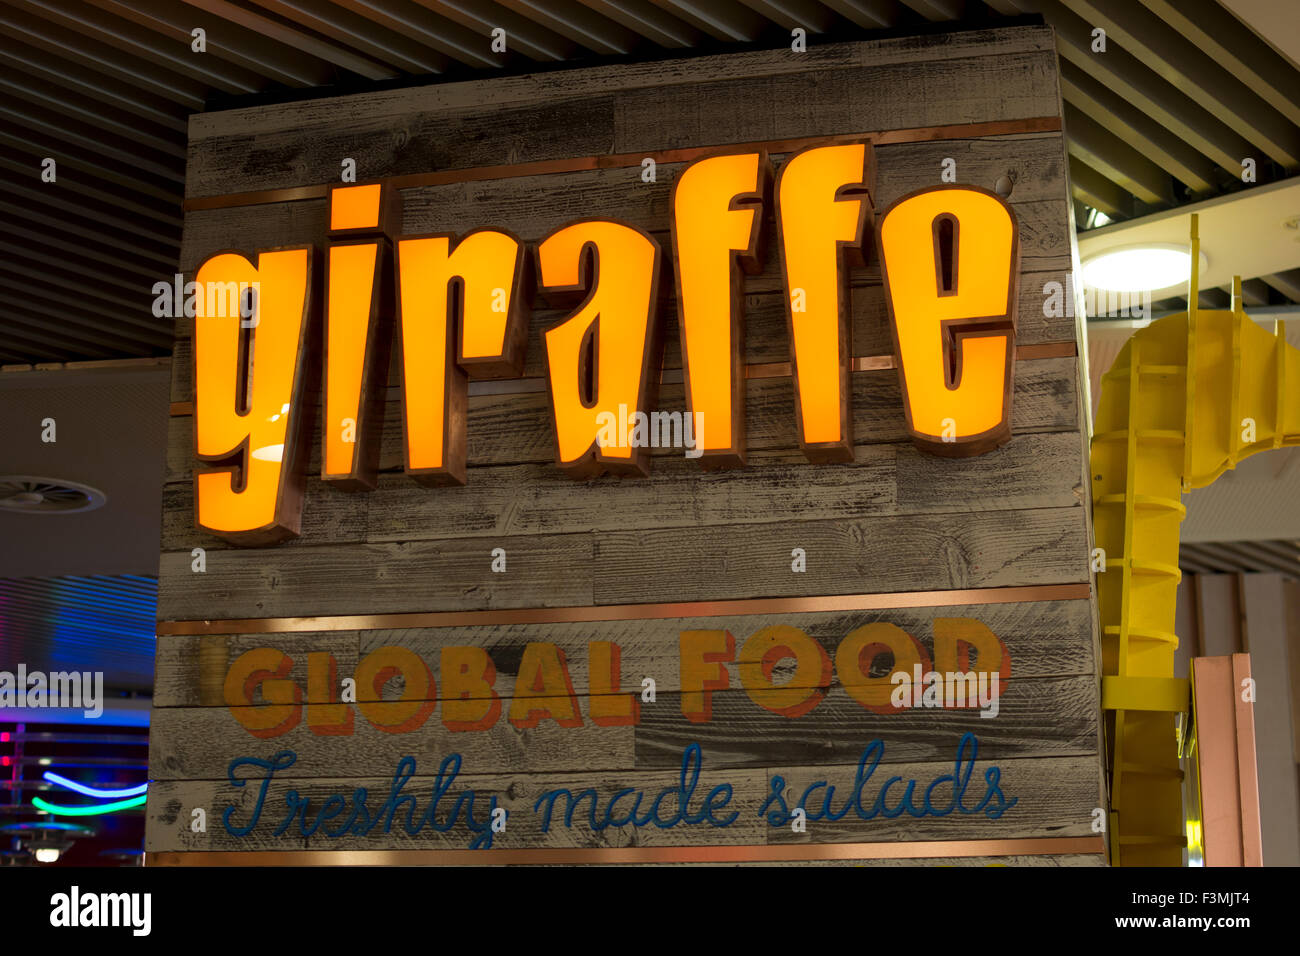 Girafe restaurant sign, Grand Central, Birmingham, UK Banque D'Images